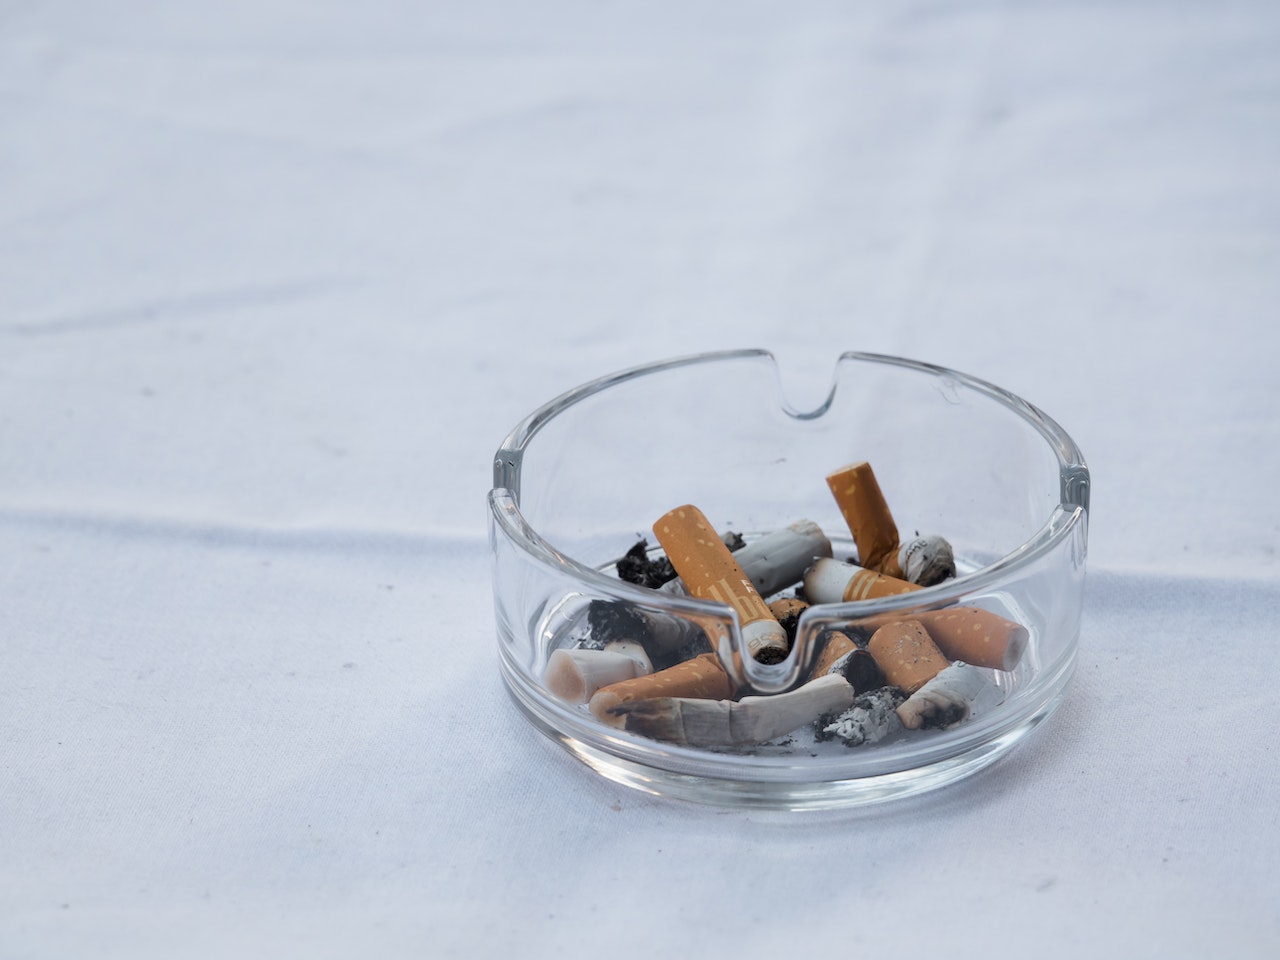 El cigarrillo causa 351.000 muertes al año en ocho países de Latinoamérica, según un estudio